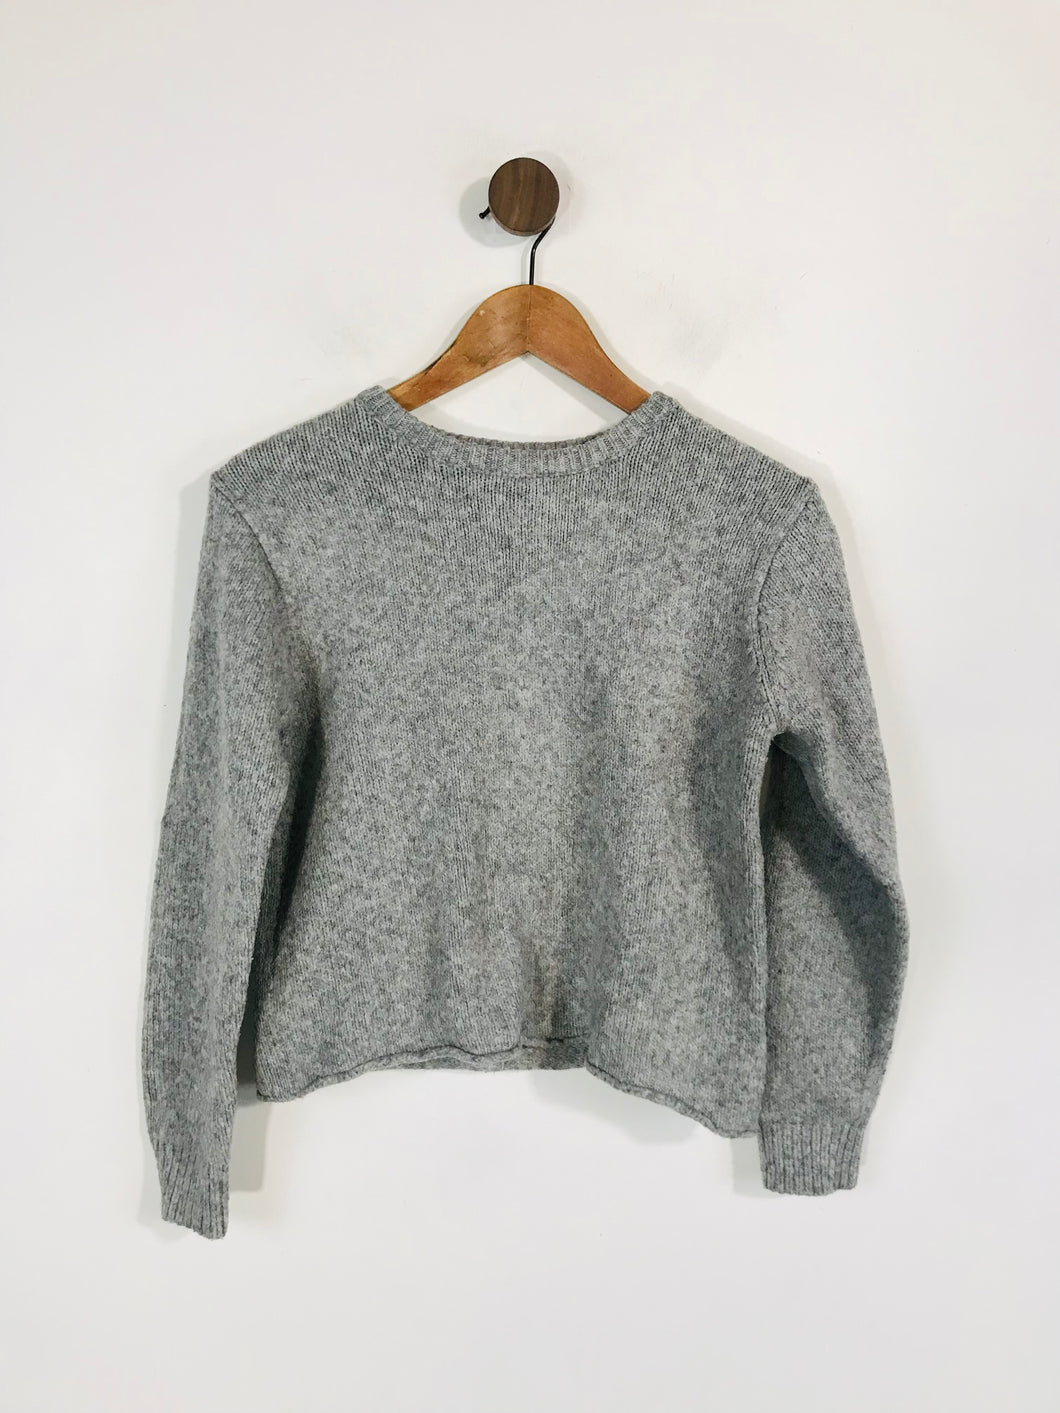 Brandy Melville Women's Knit Jumper | S UK8 | Grey